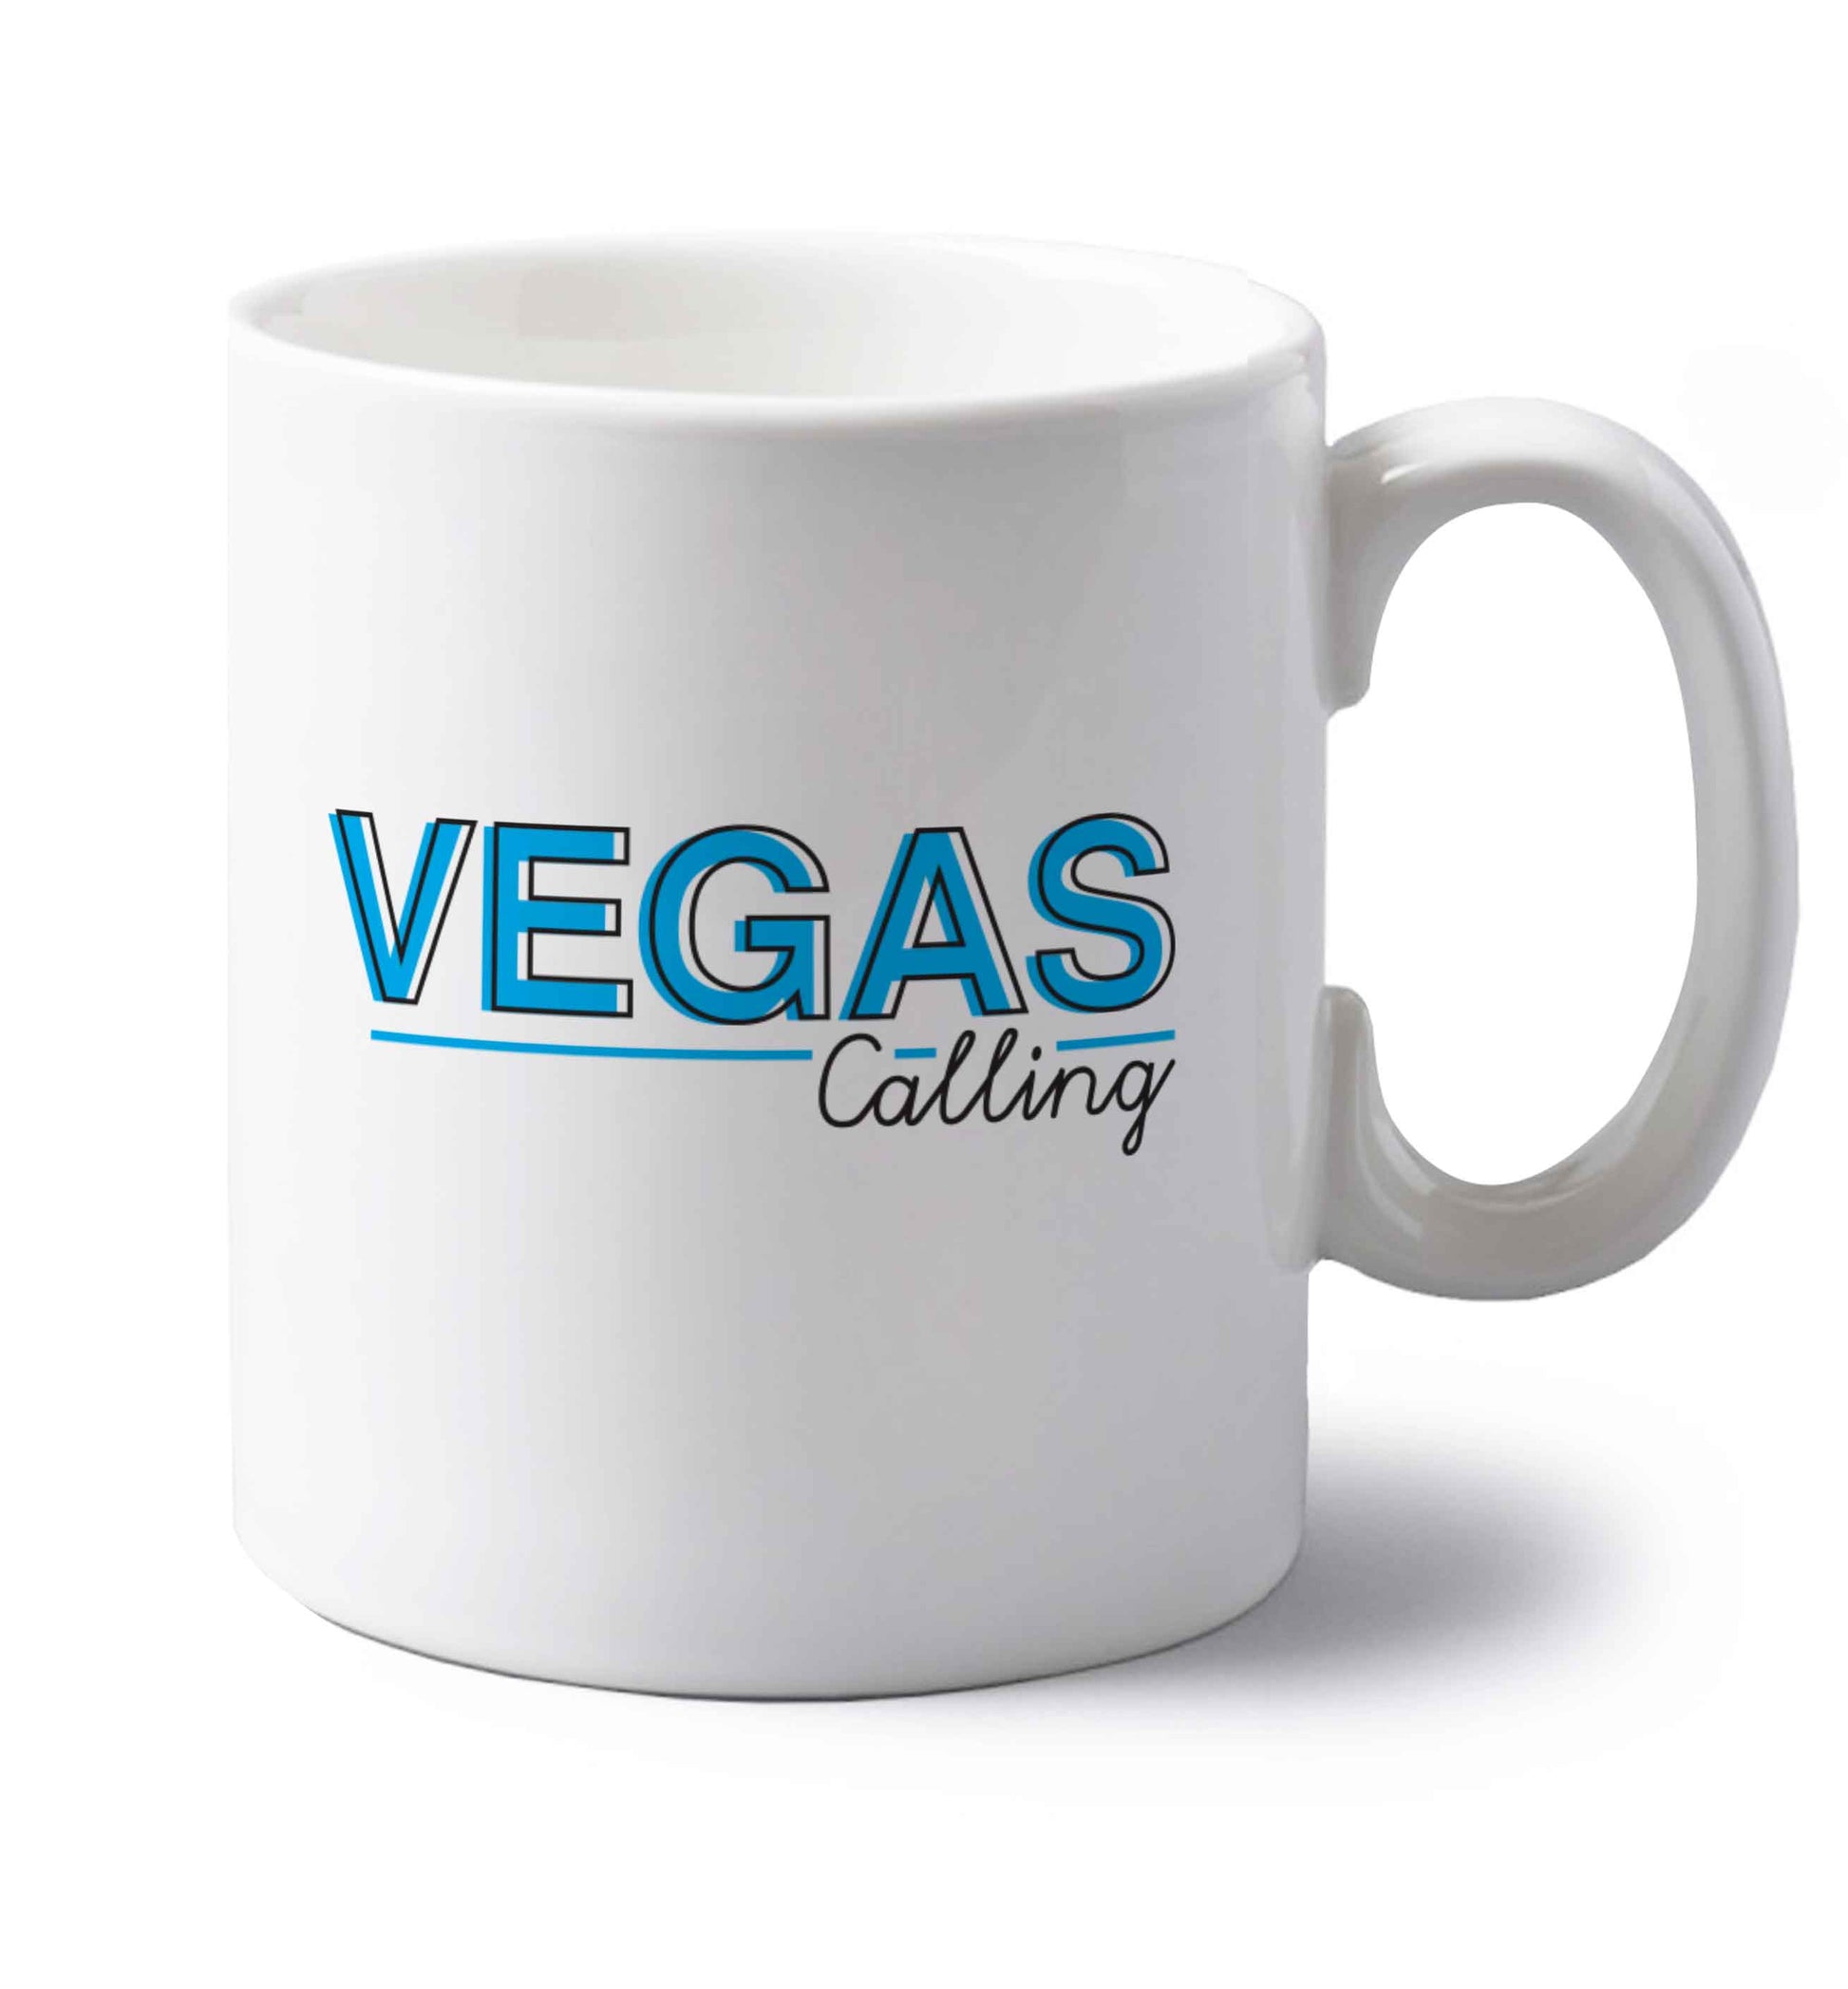 Vegas calling left handed white ceramic mug 